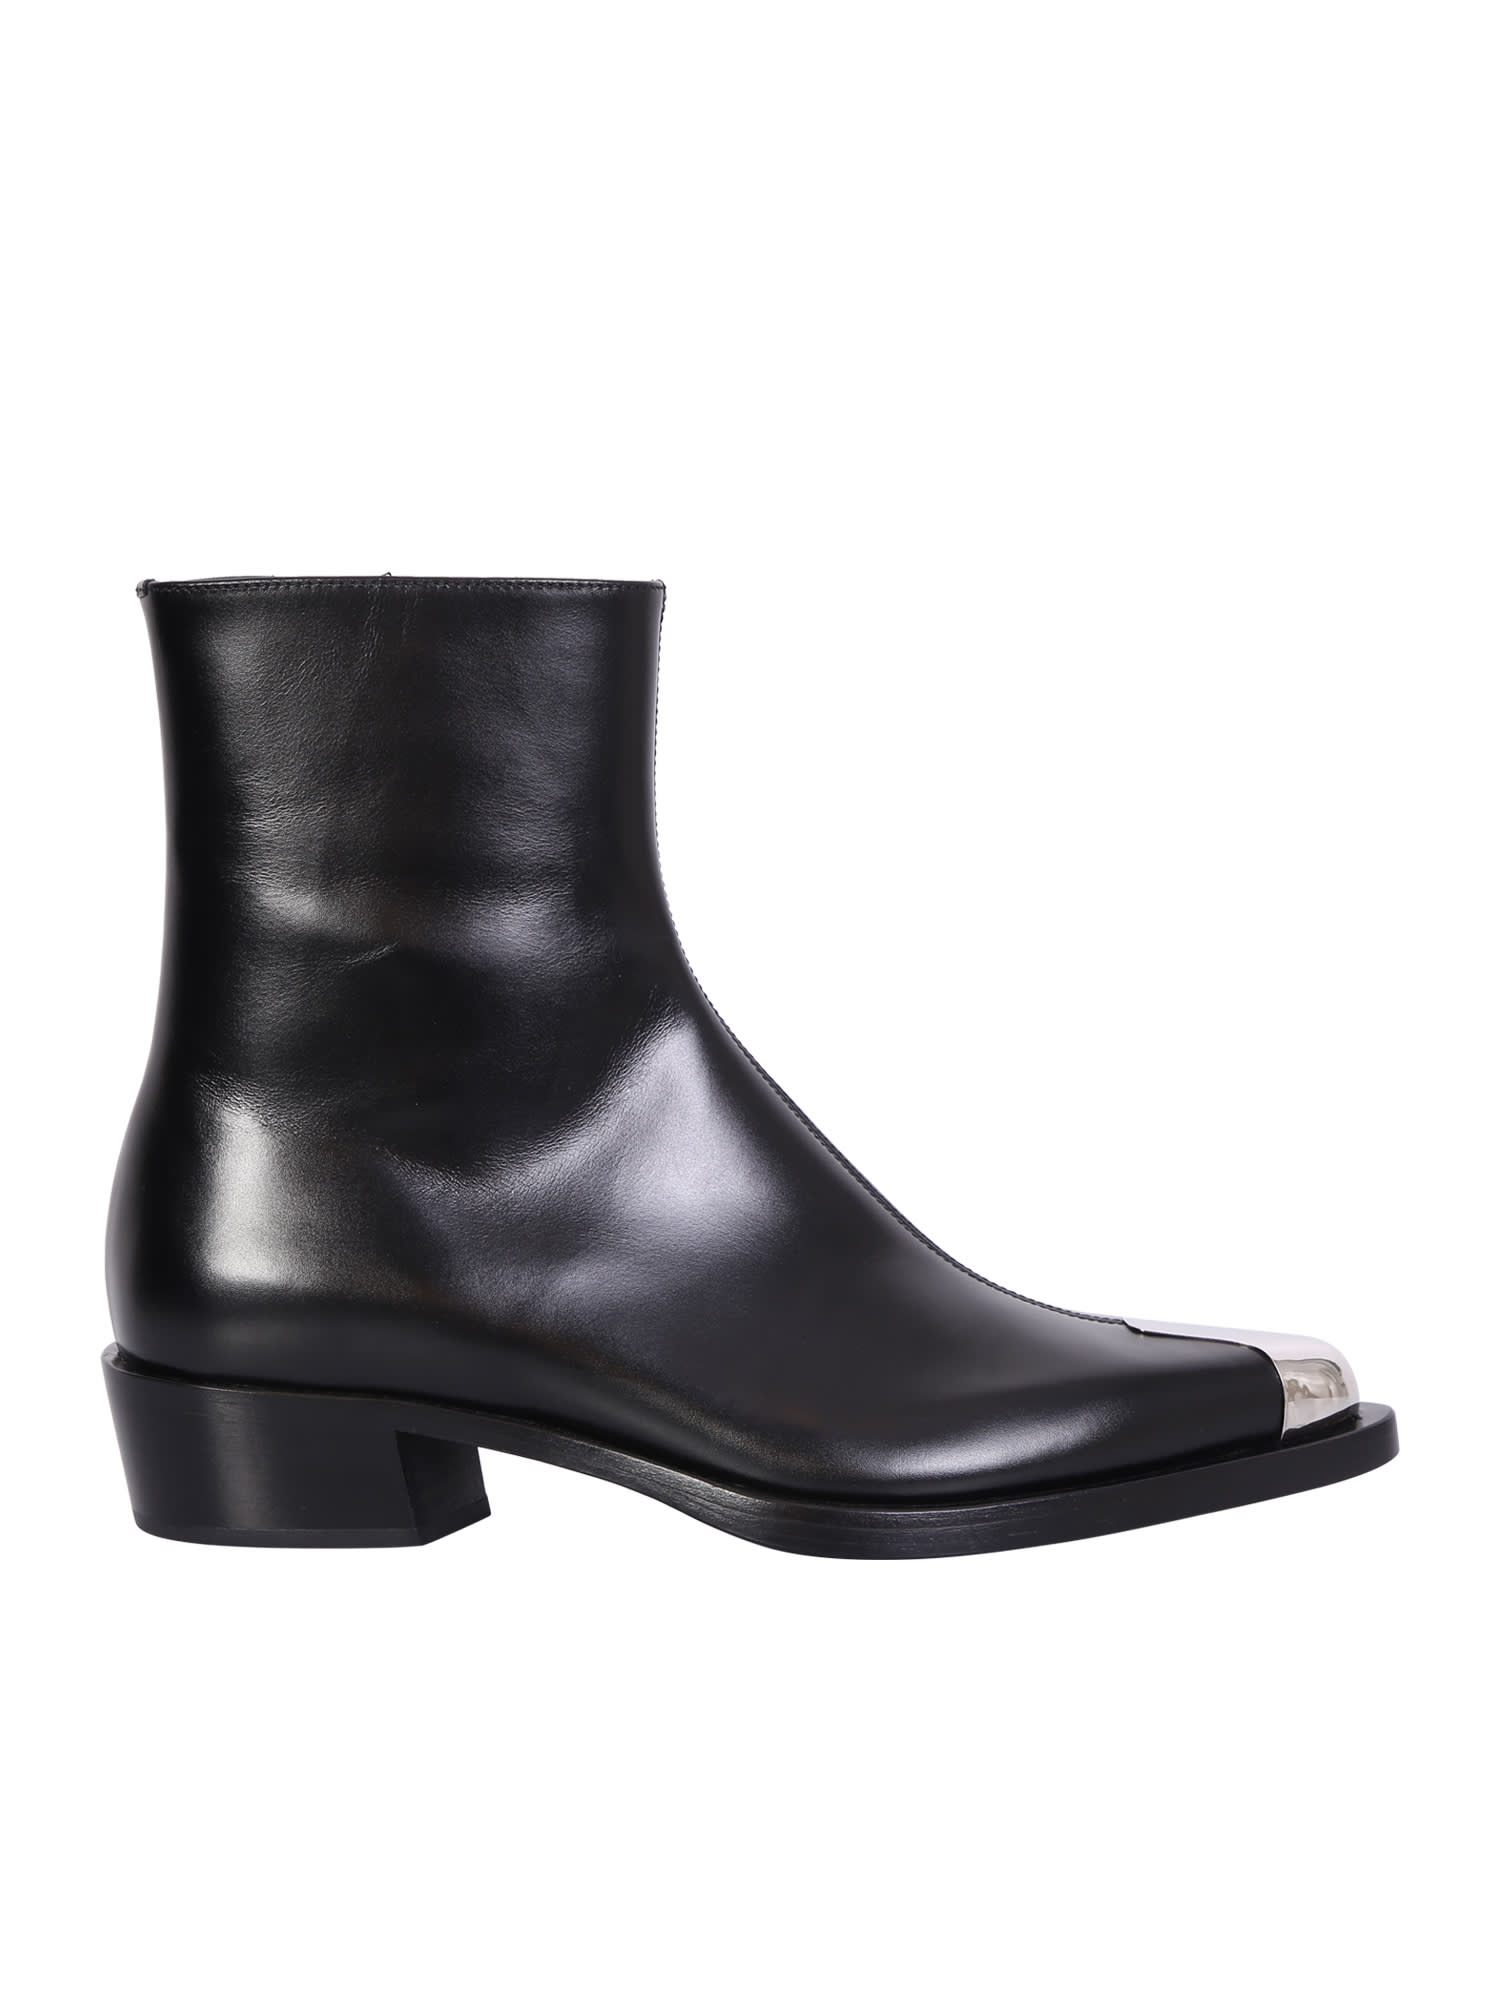 Alexander McQueen Metal Toecap Ankle Boots